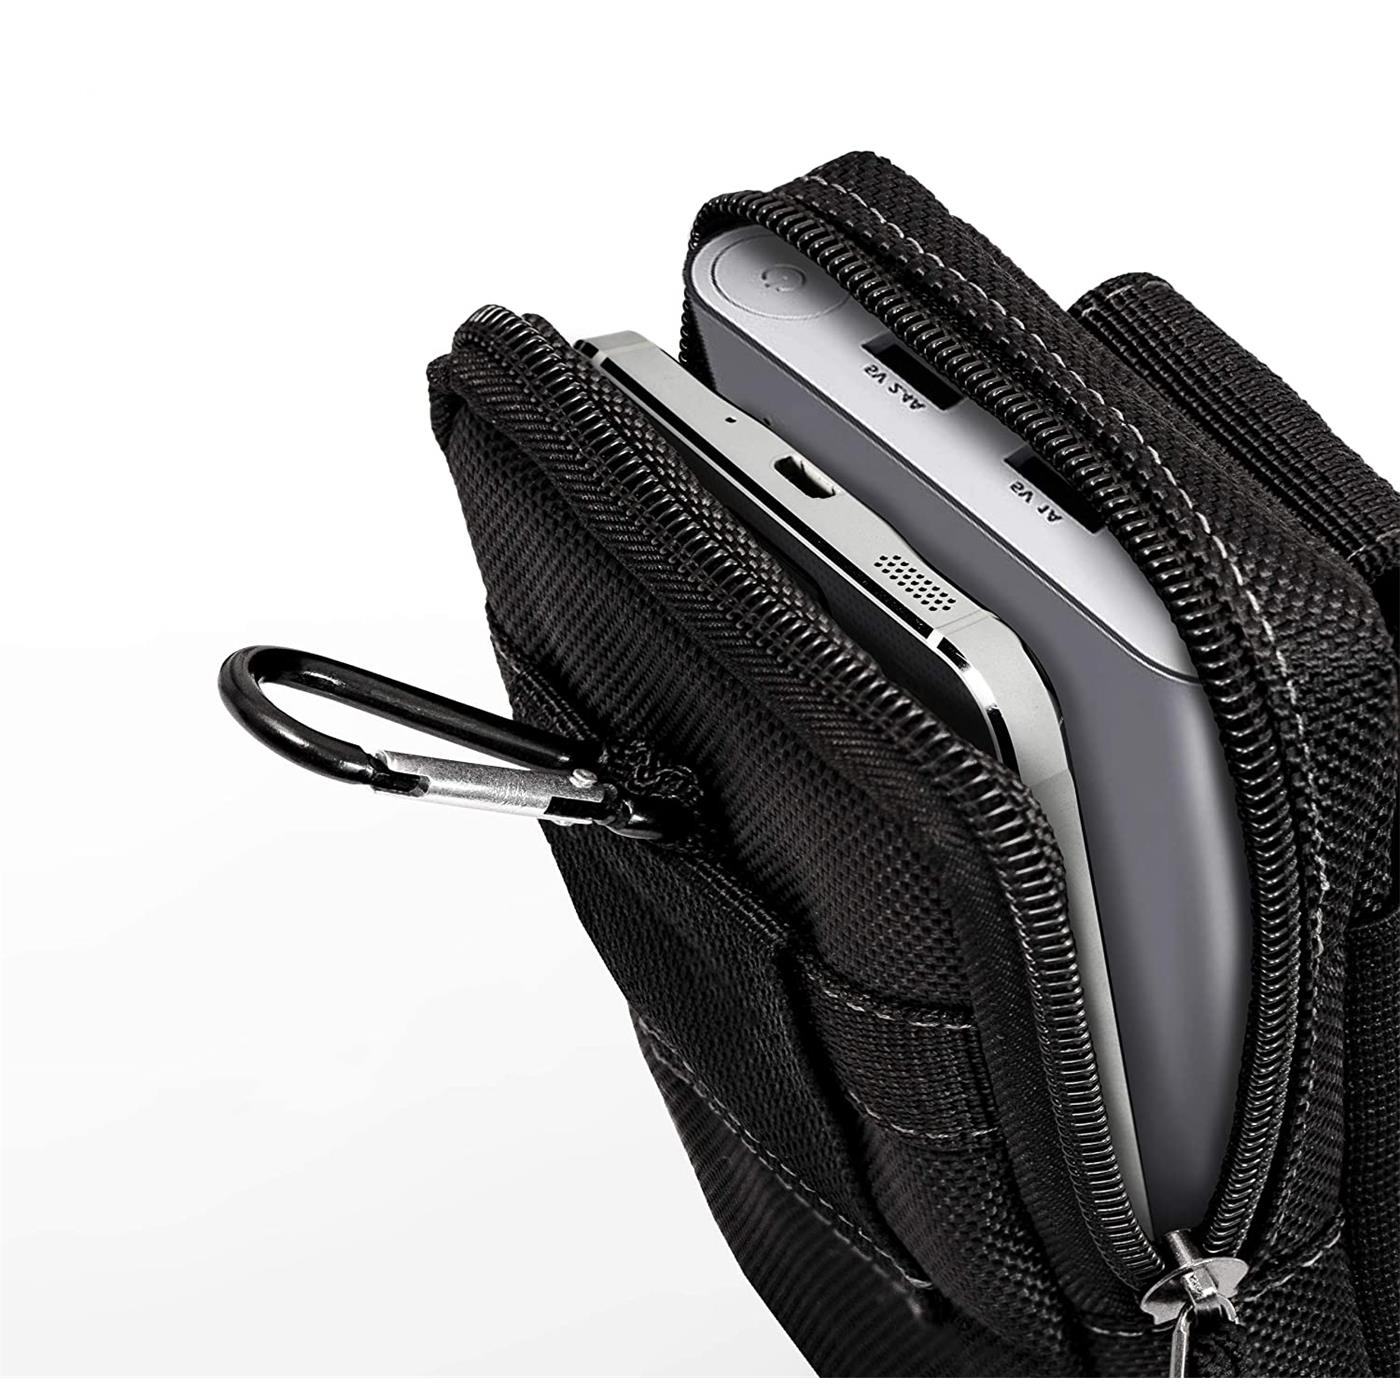 Indexbild 4 - Gürtel Tasche Für Samsung Galaxy Handy Hülle Schutzhülle Case Clip Etui Nylon